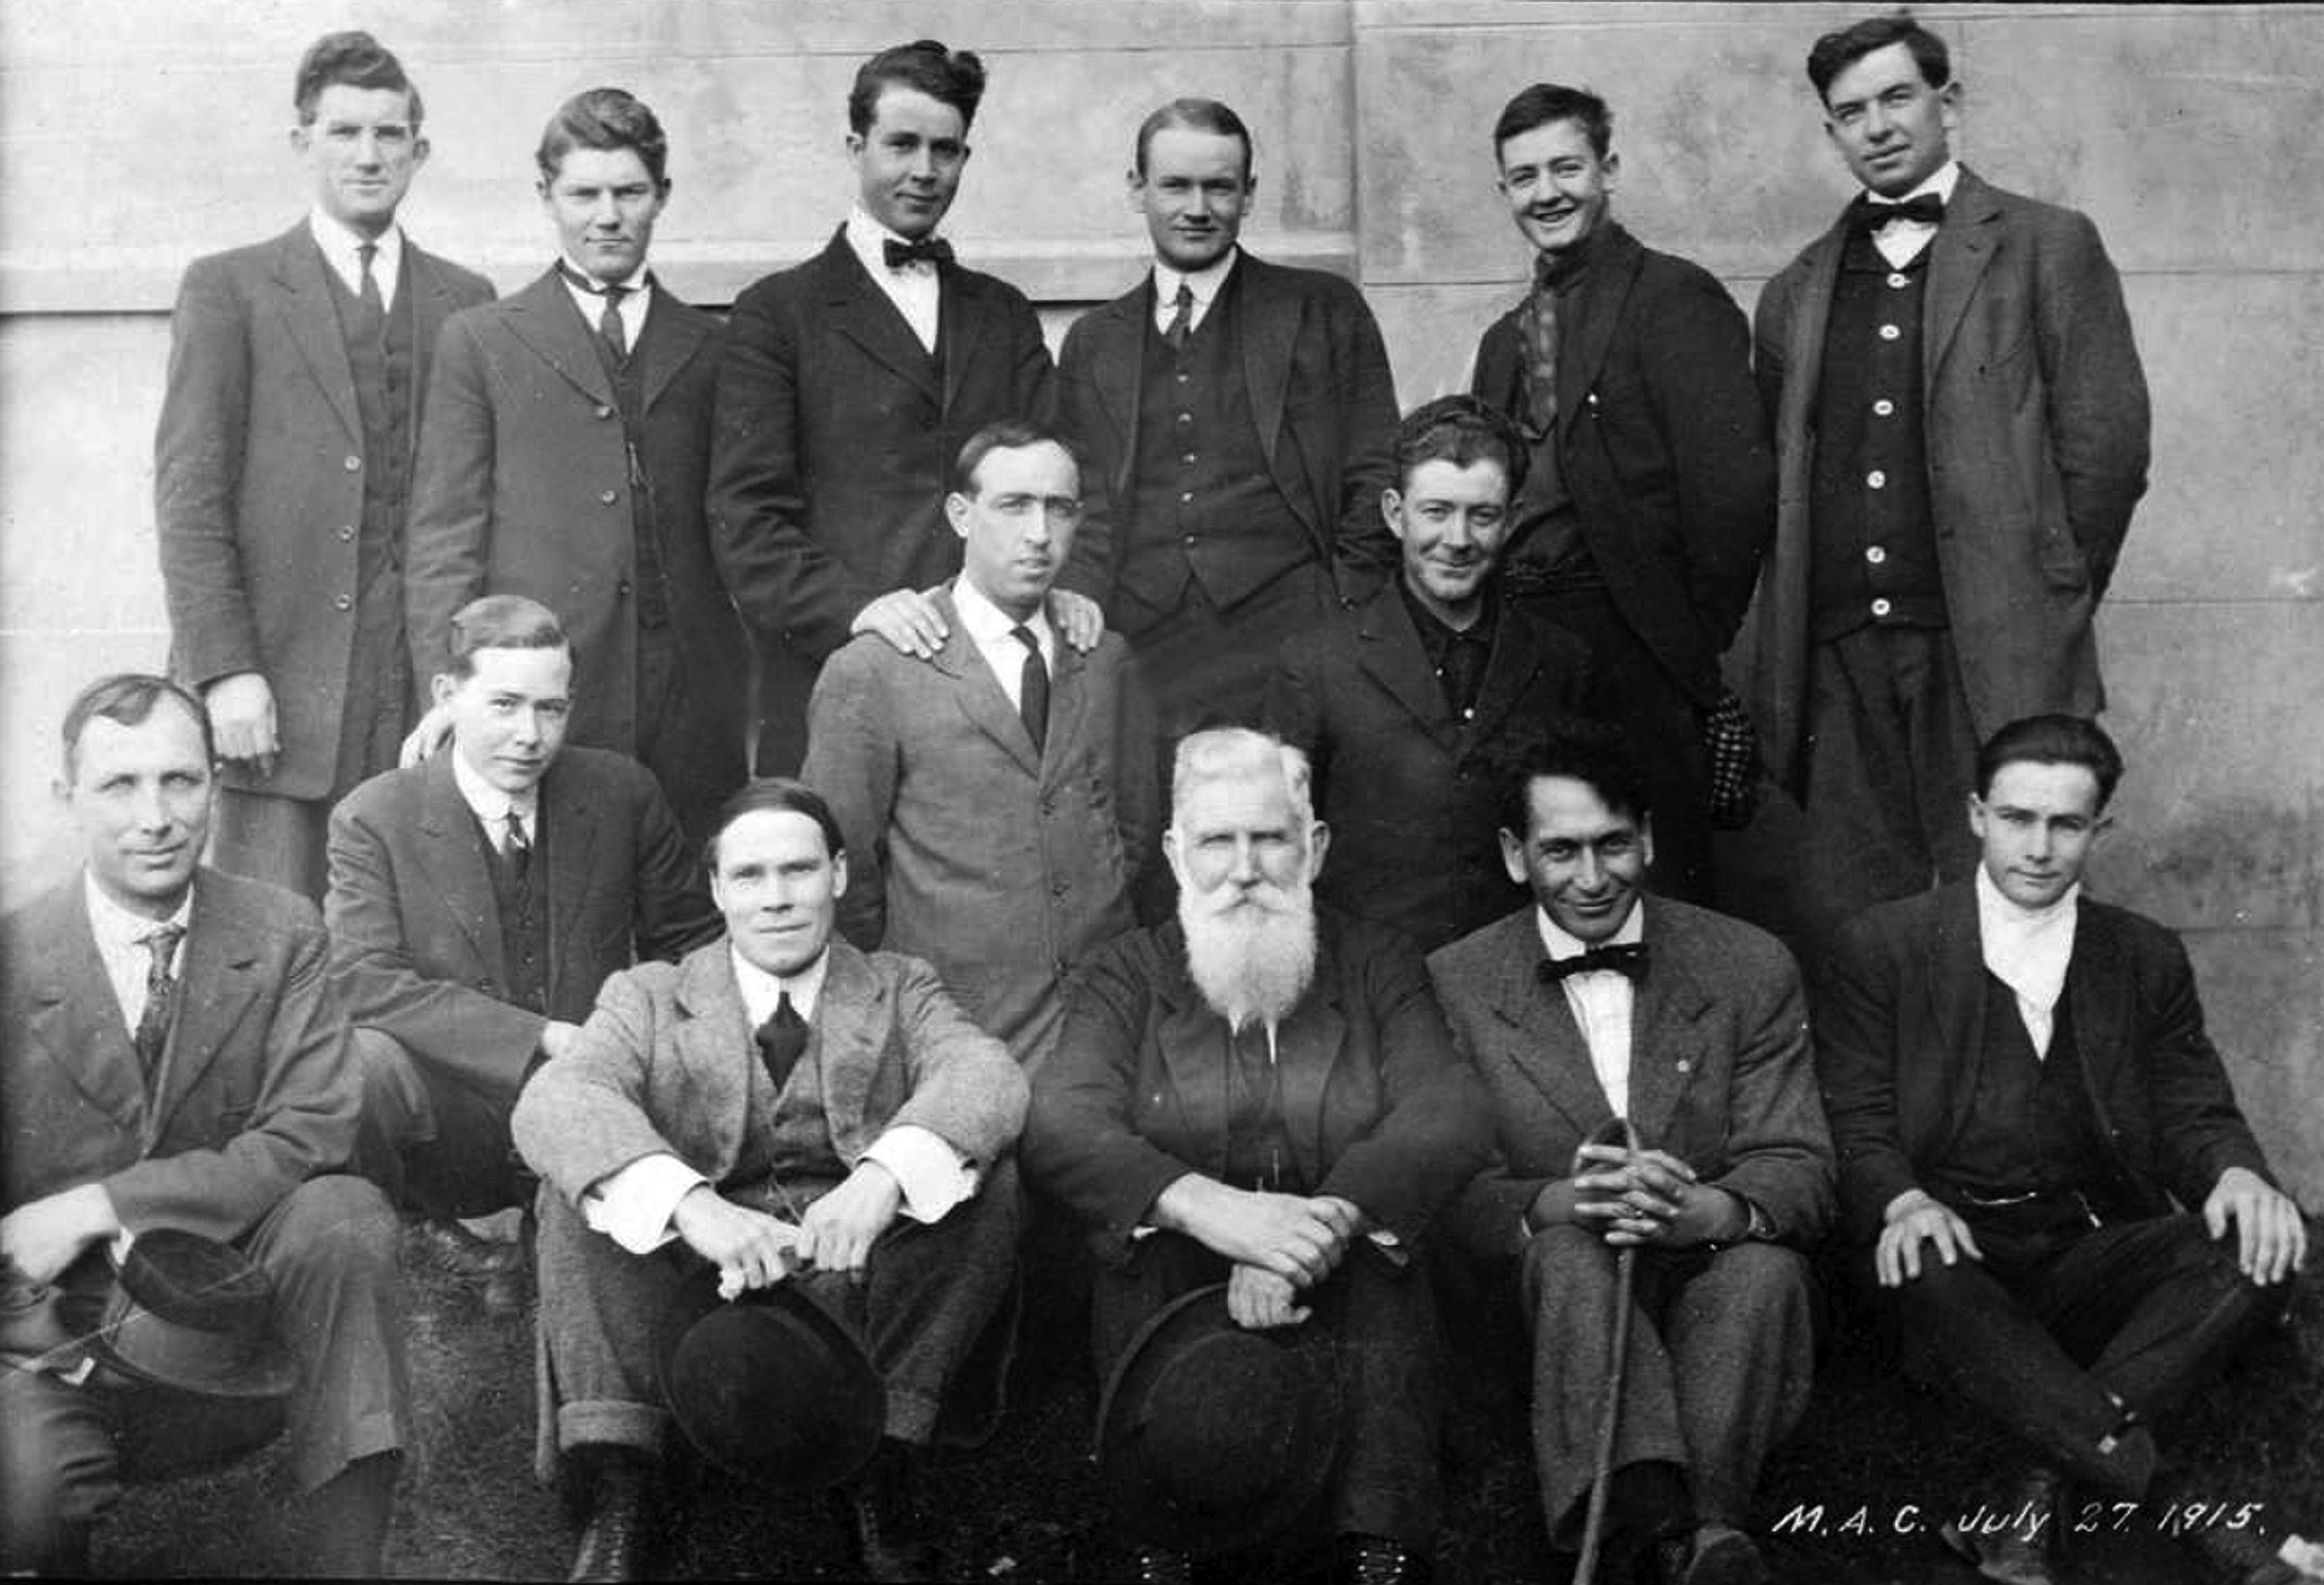 Missionaries at MAC, July 27, 1915